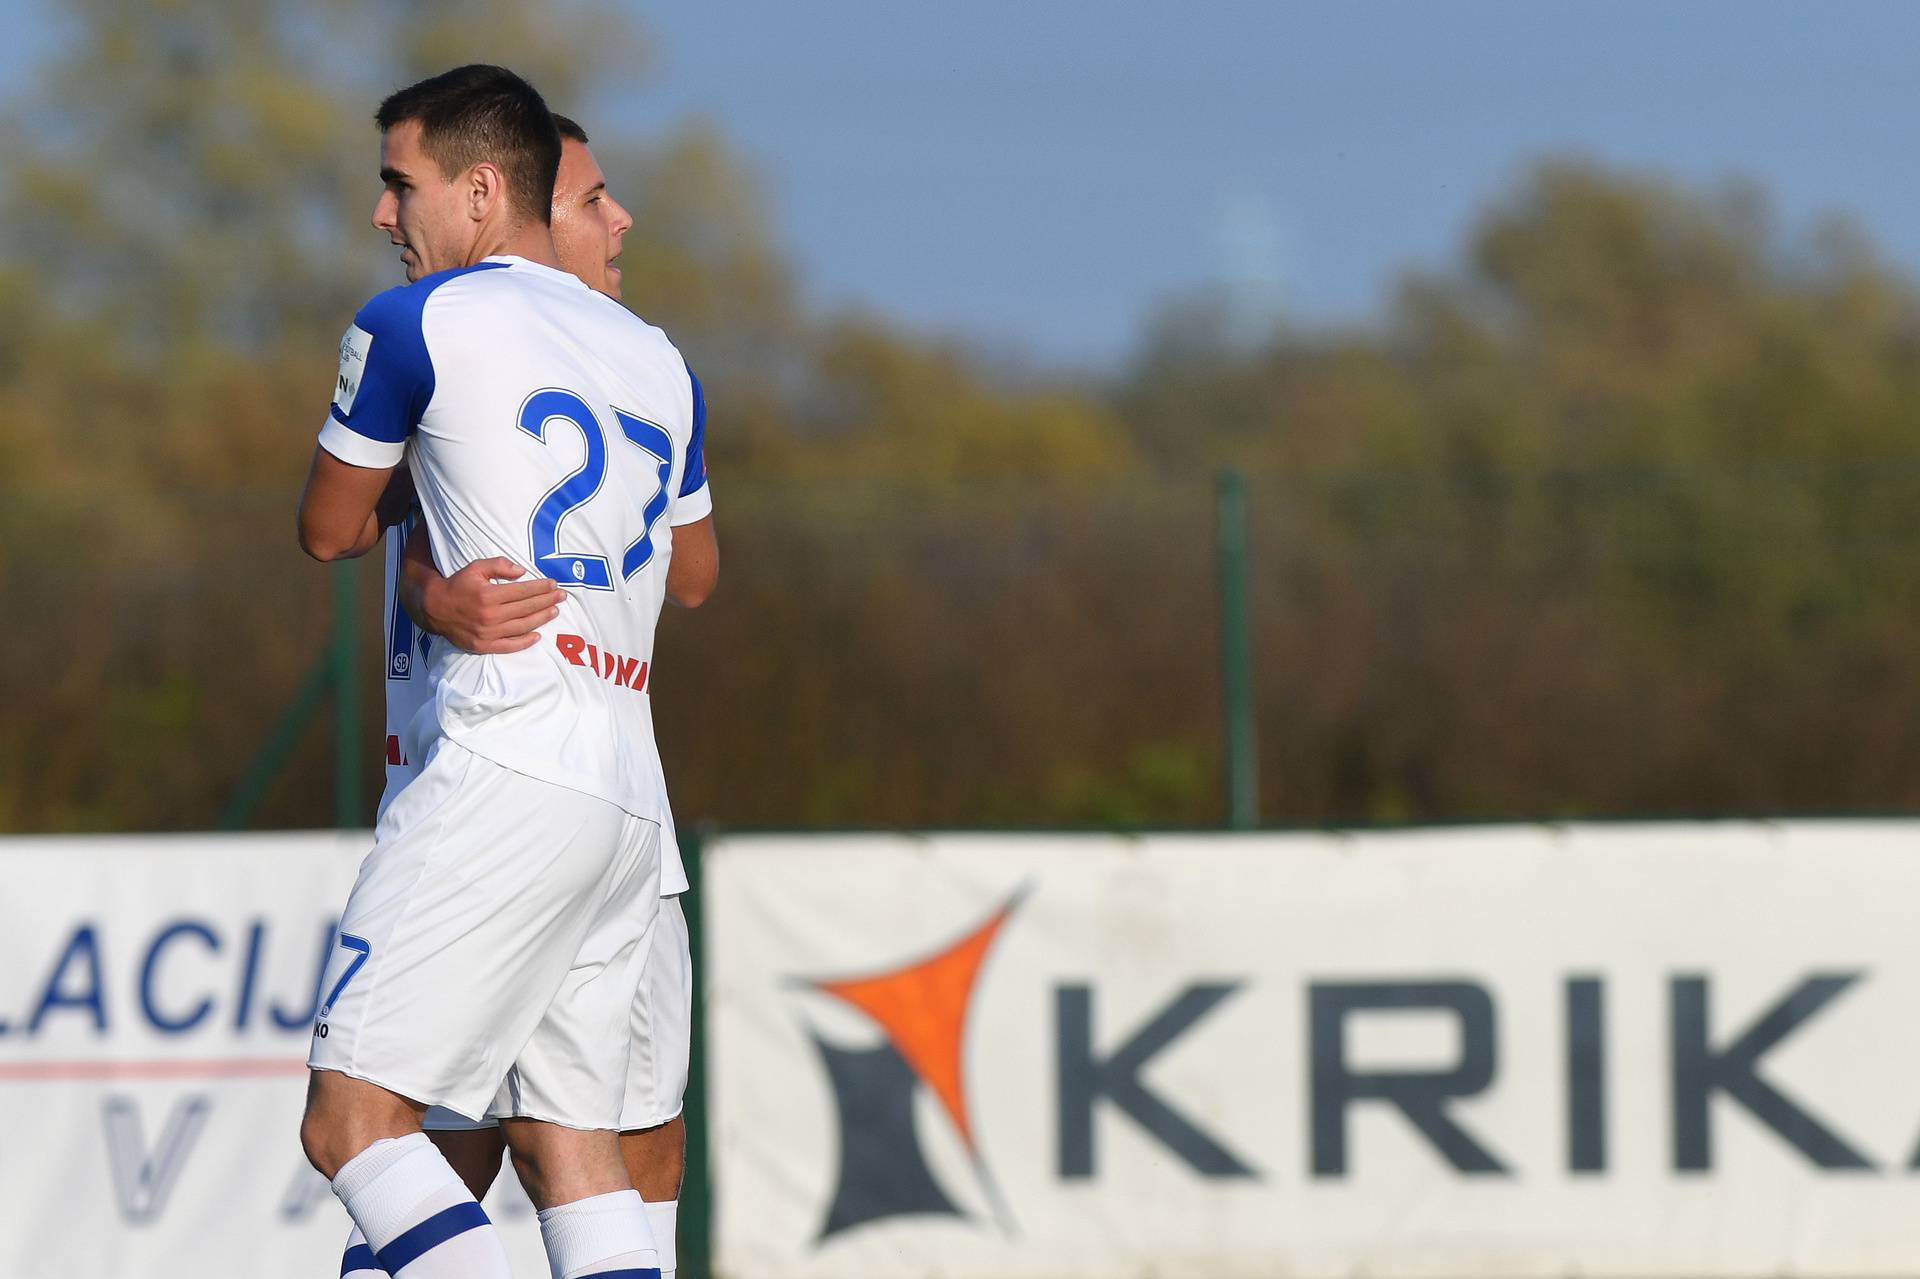 Nedelišće i Slaven Belupo sastali se u osmini finala SuperSport Hrvatskog nogometnog kupa